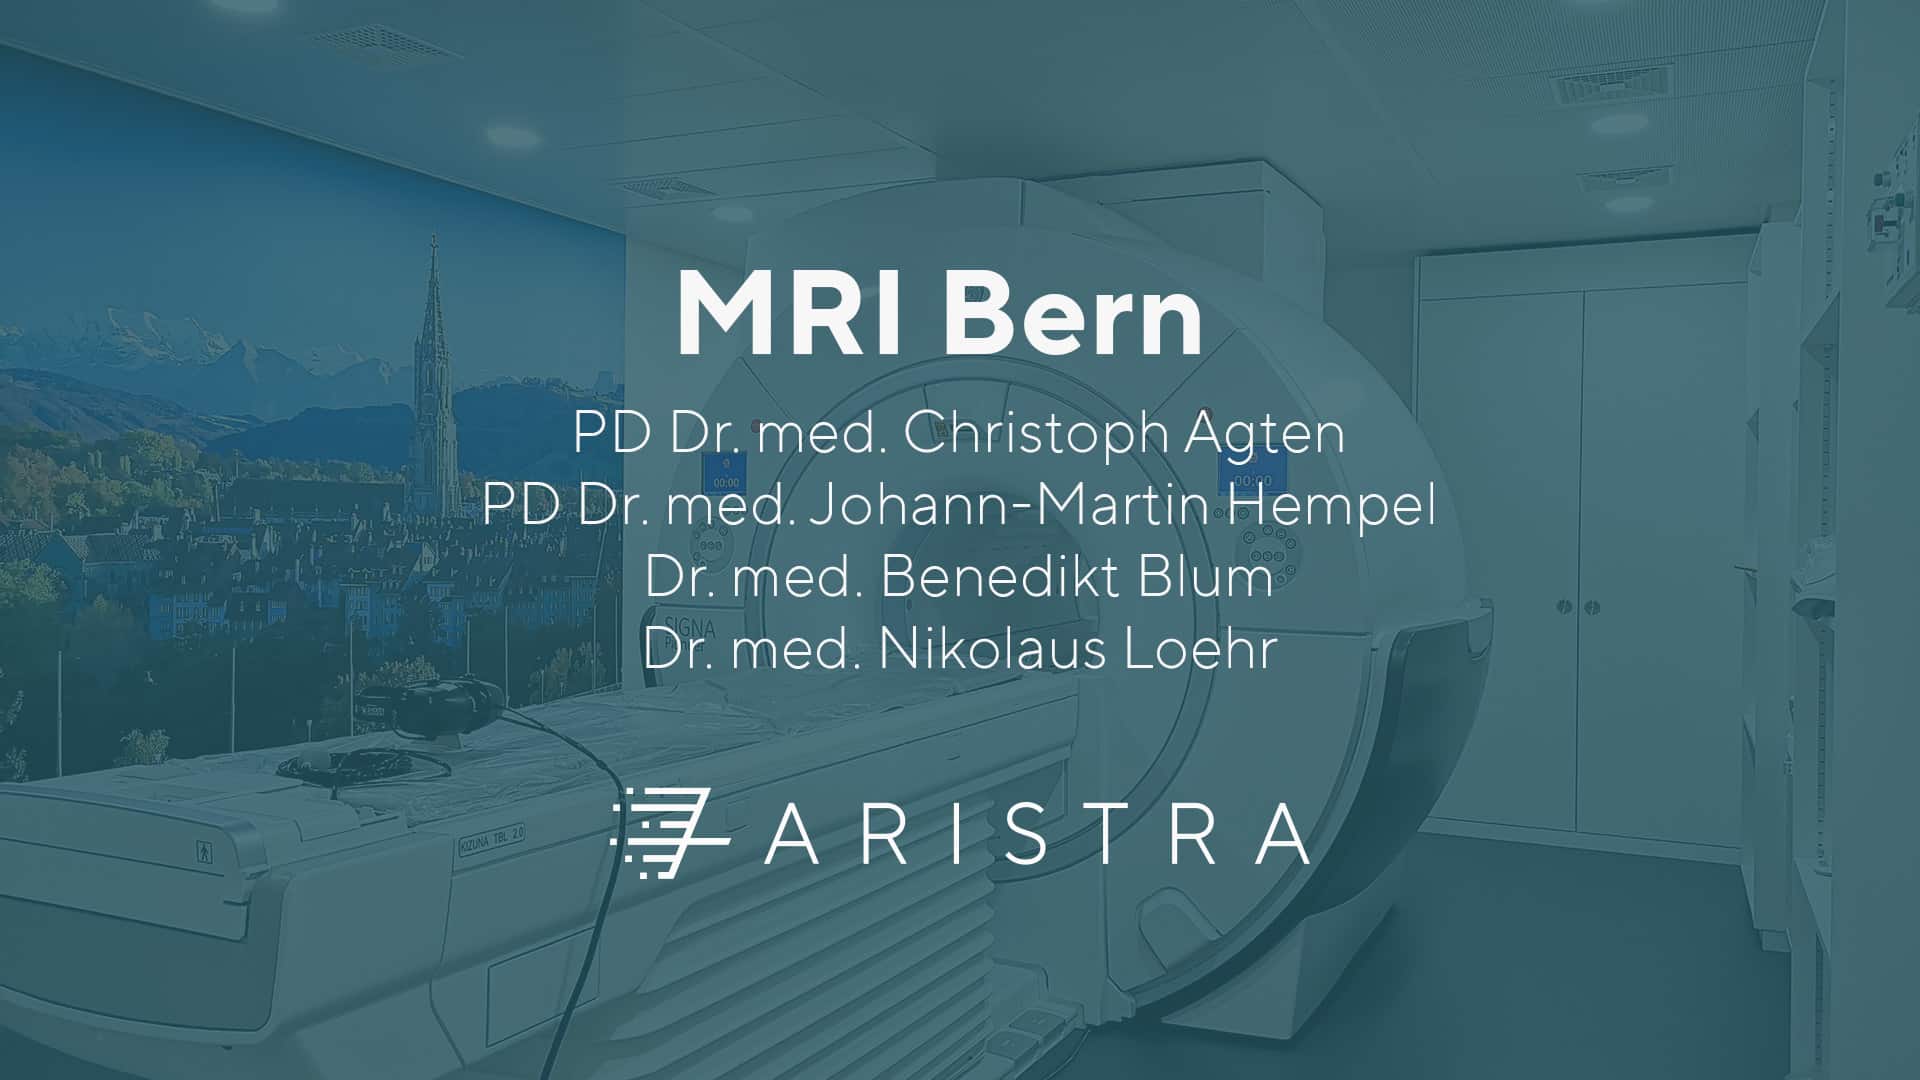 MRI Bern bei ARISTRA